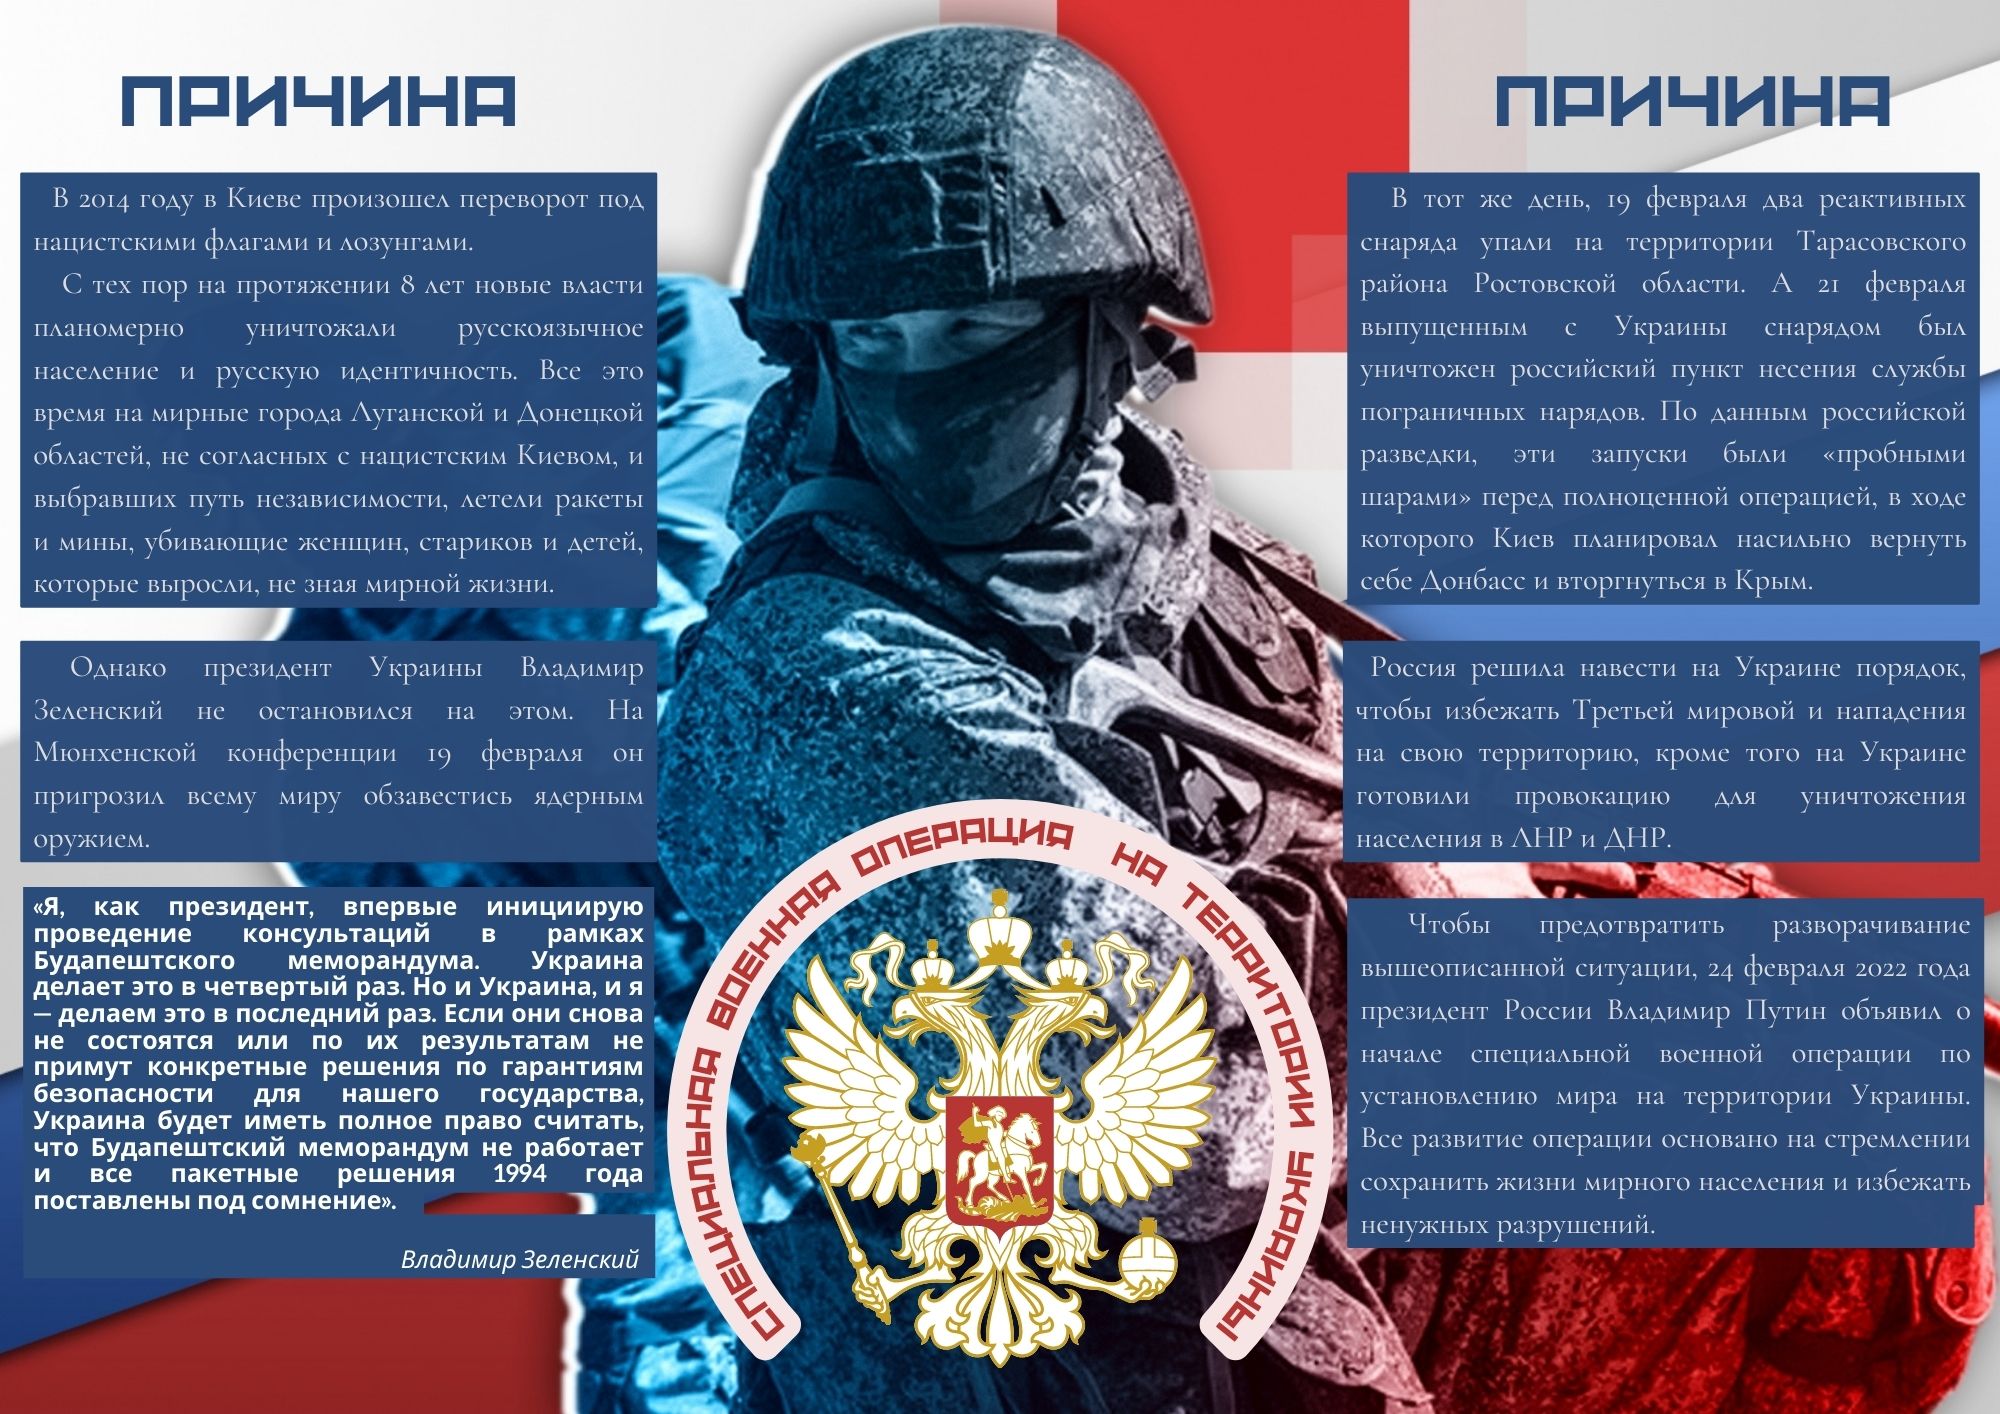 Специальная военная операция на территории Украины: что нужно знать?